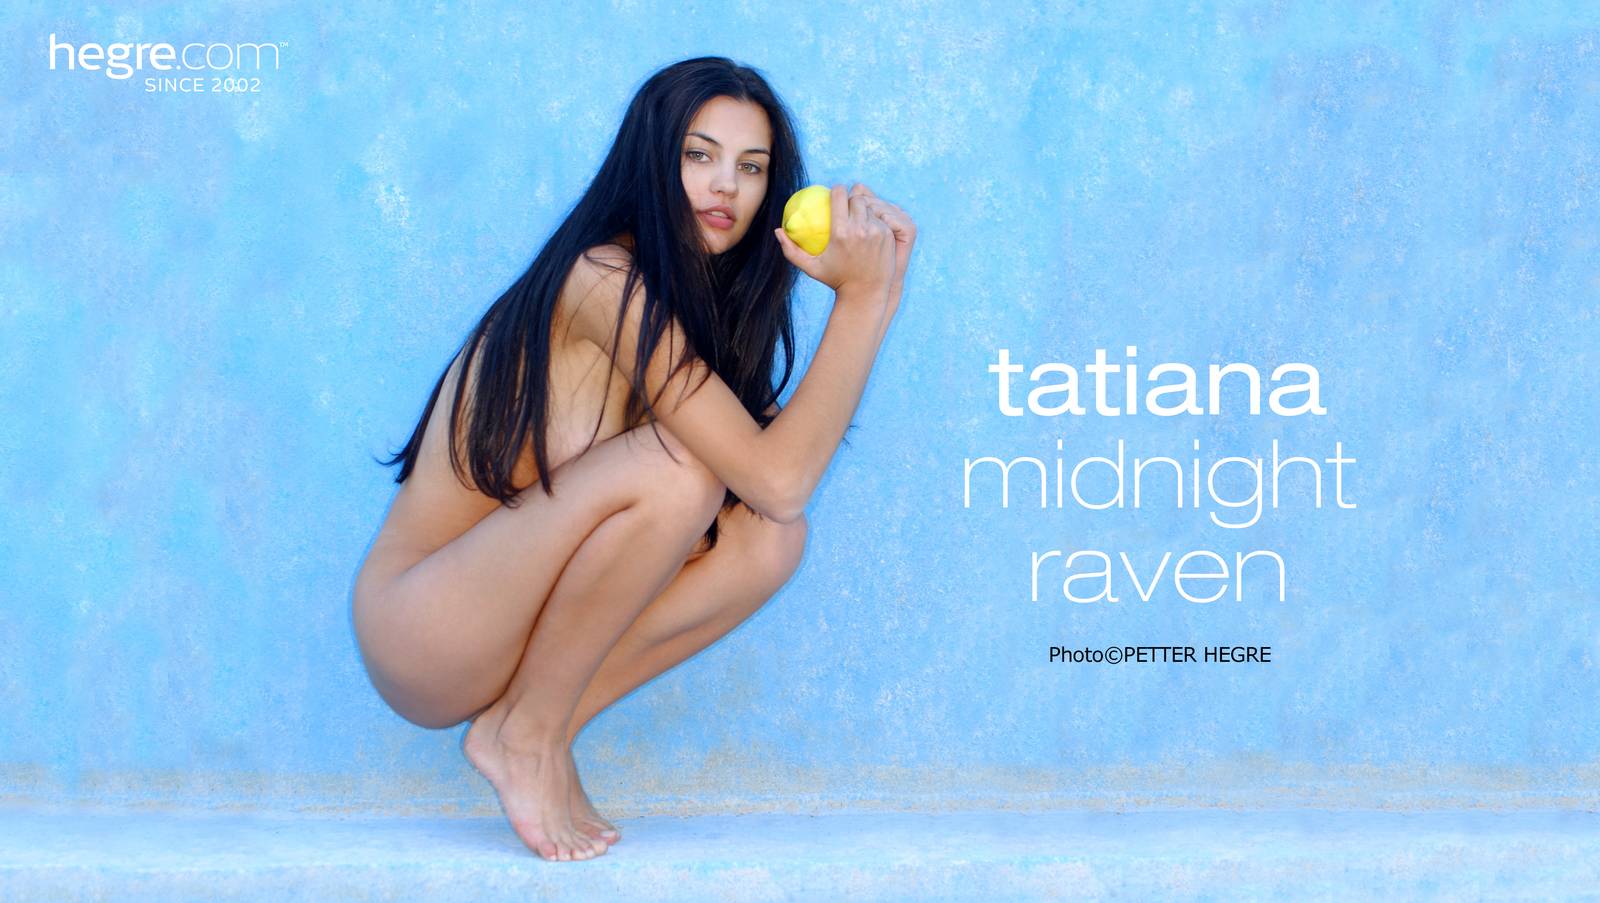 Tatiana online - nude photos